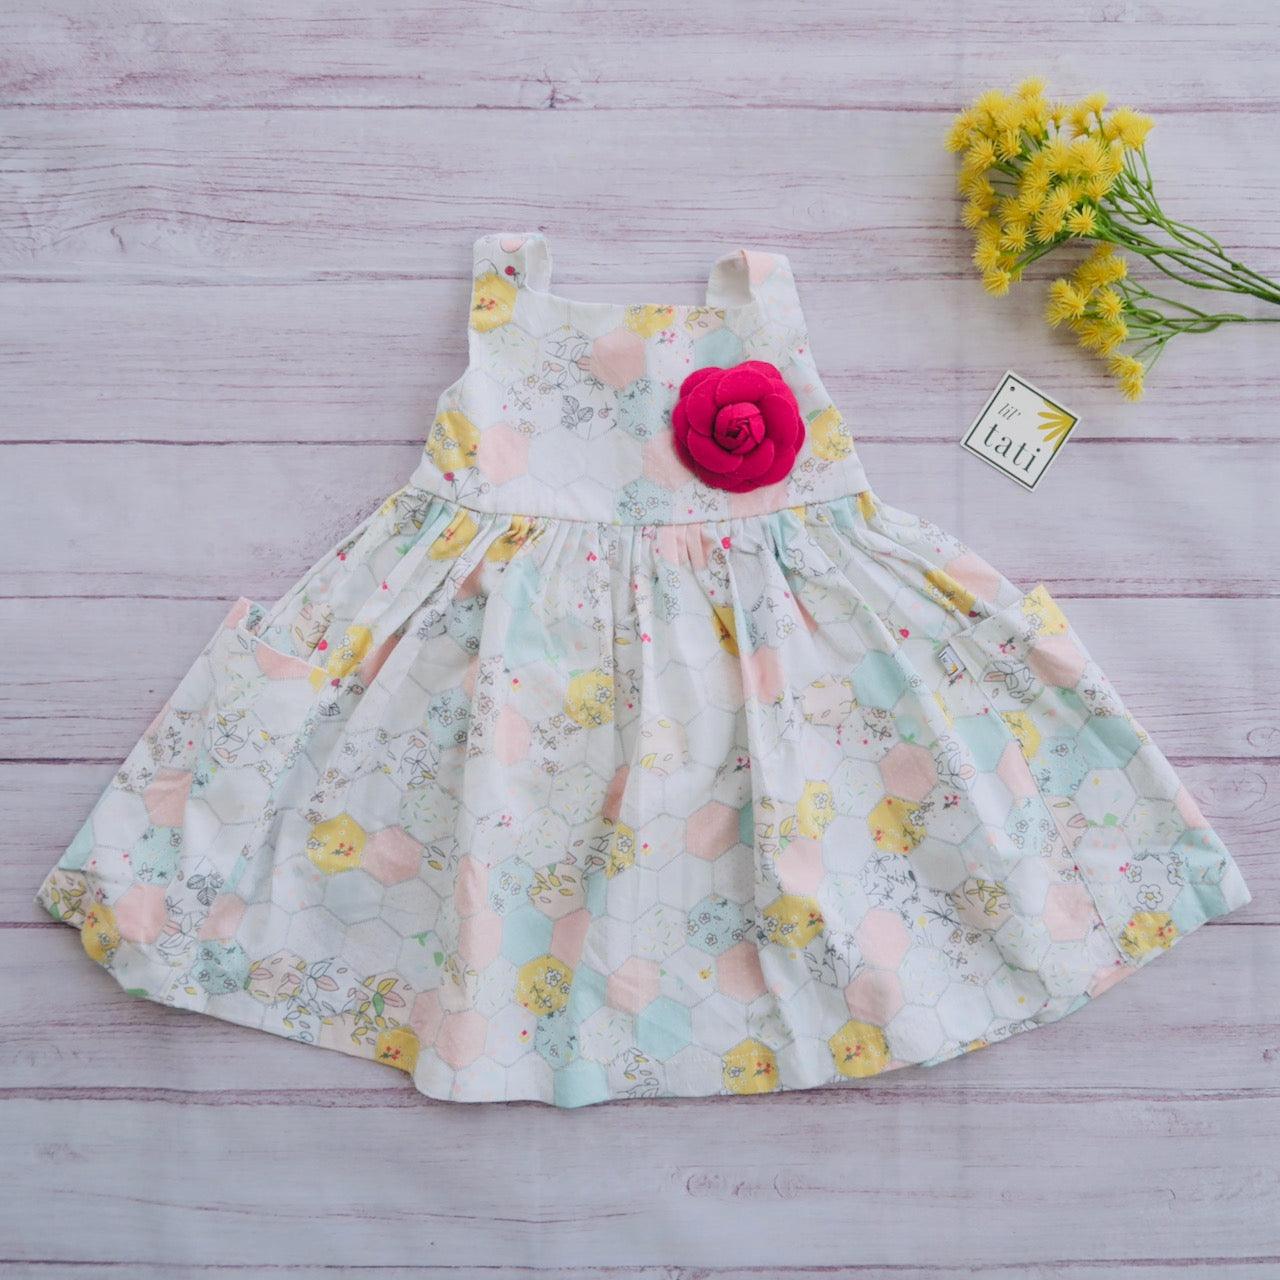 Poppy Dress in Pastel Hexagon Print - Lil' Tati